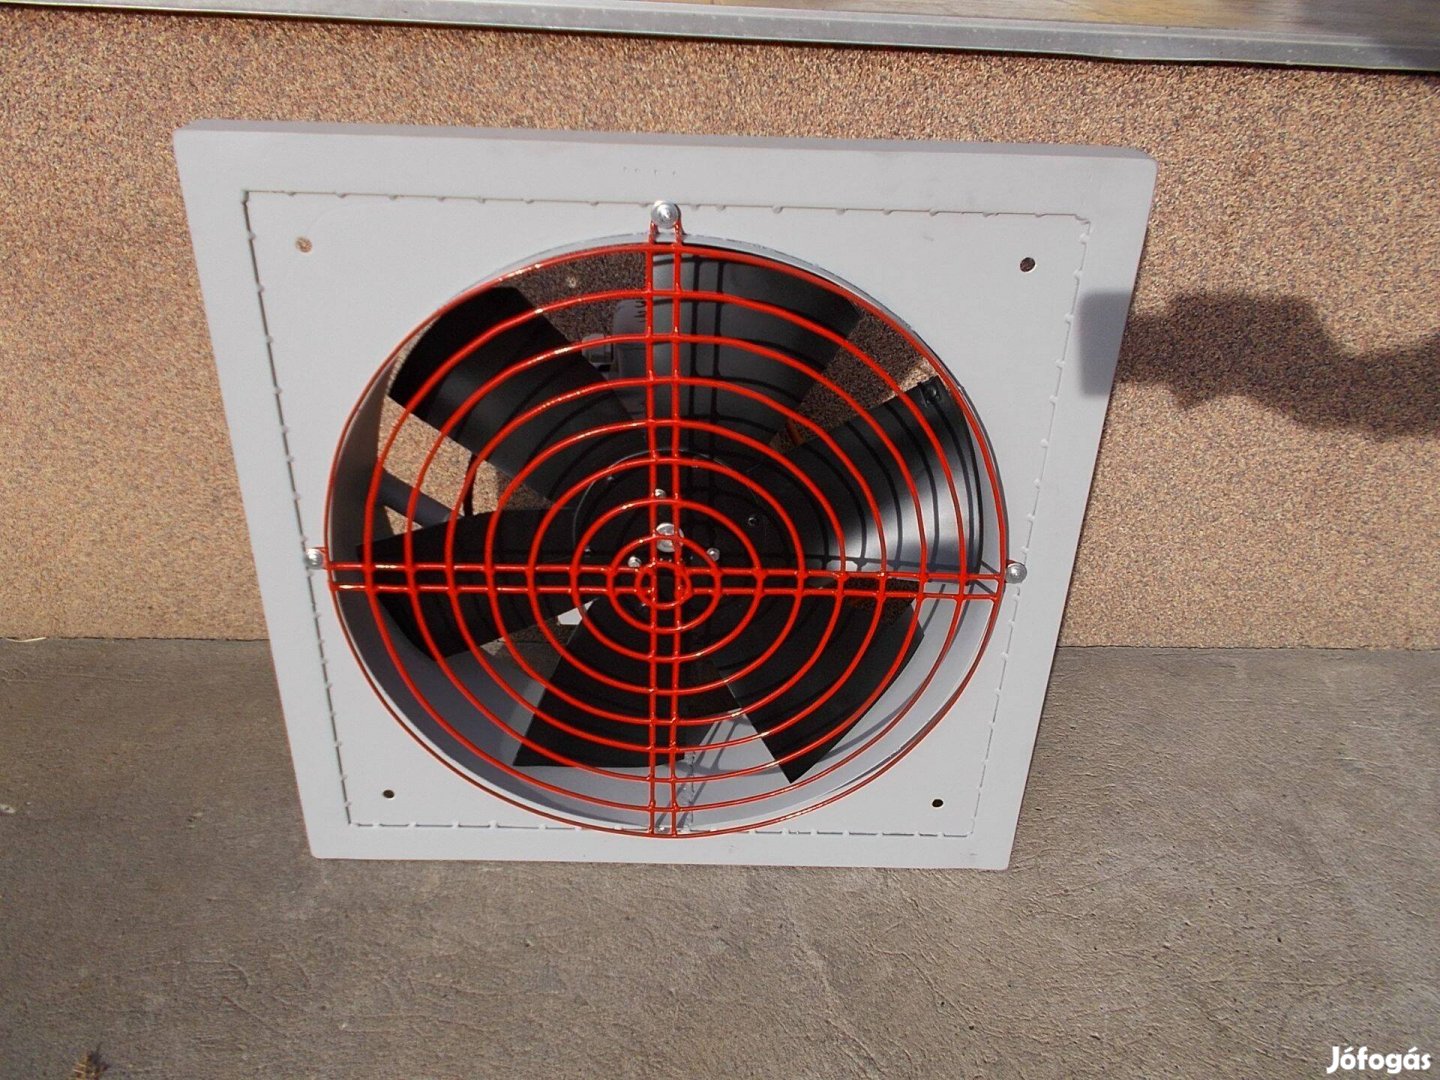 41,5 cm-es felújított ipari ventilátor 3fázisú 250W-os villanymotorral